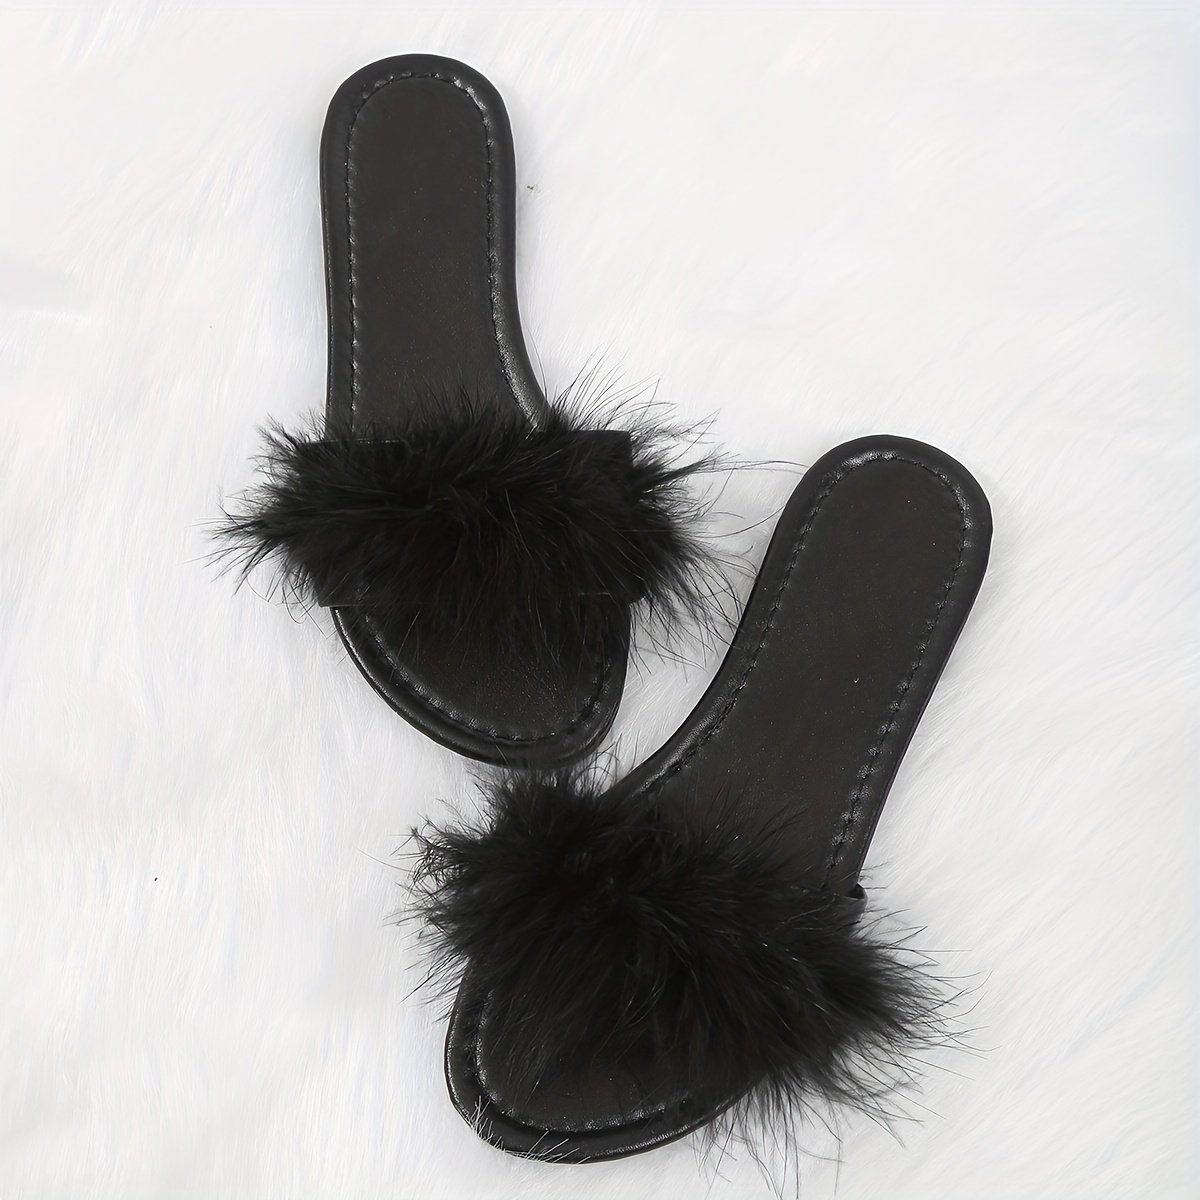 Women's Solid Color Slide Sandals, Casual Faux Fur Decor Flat